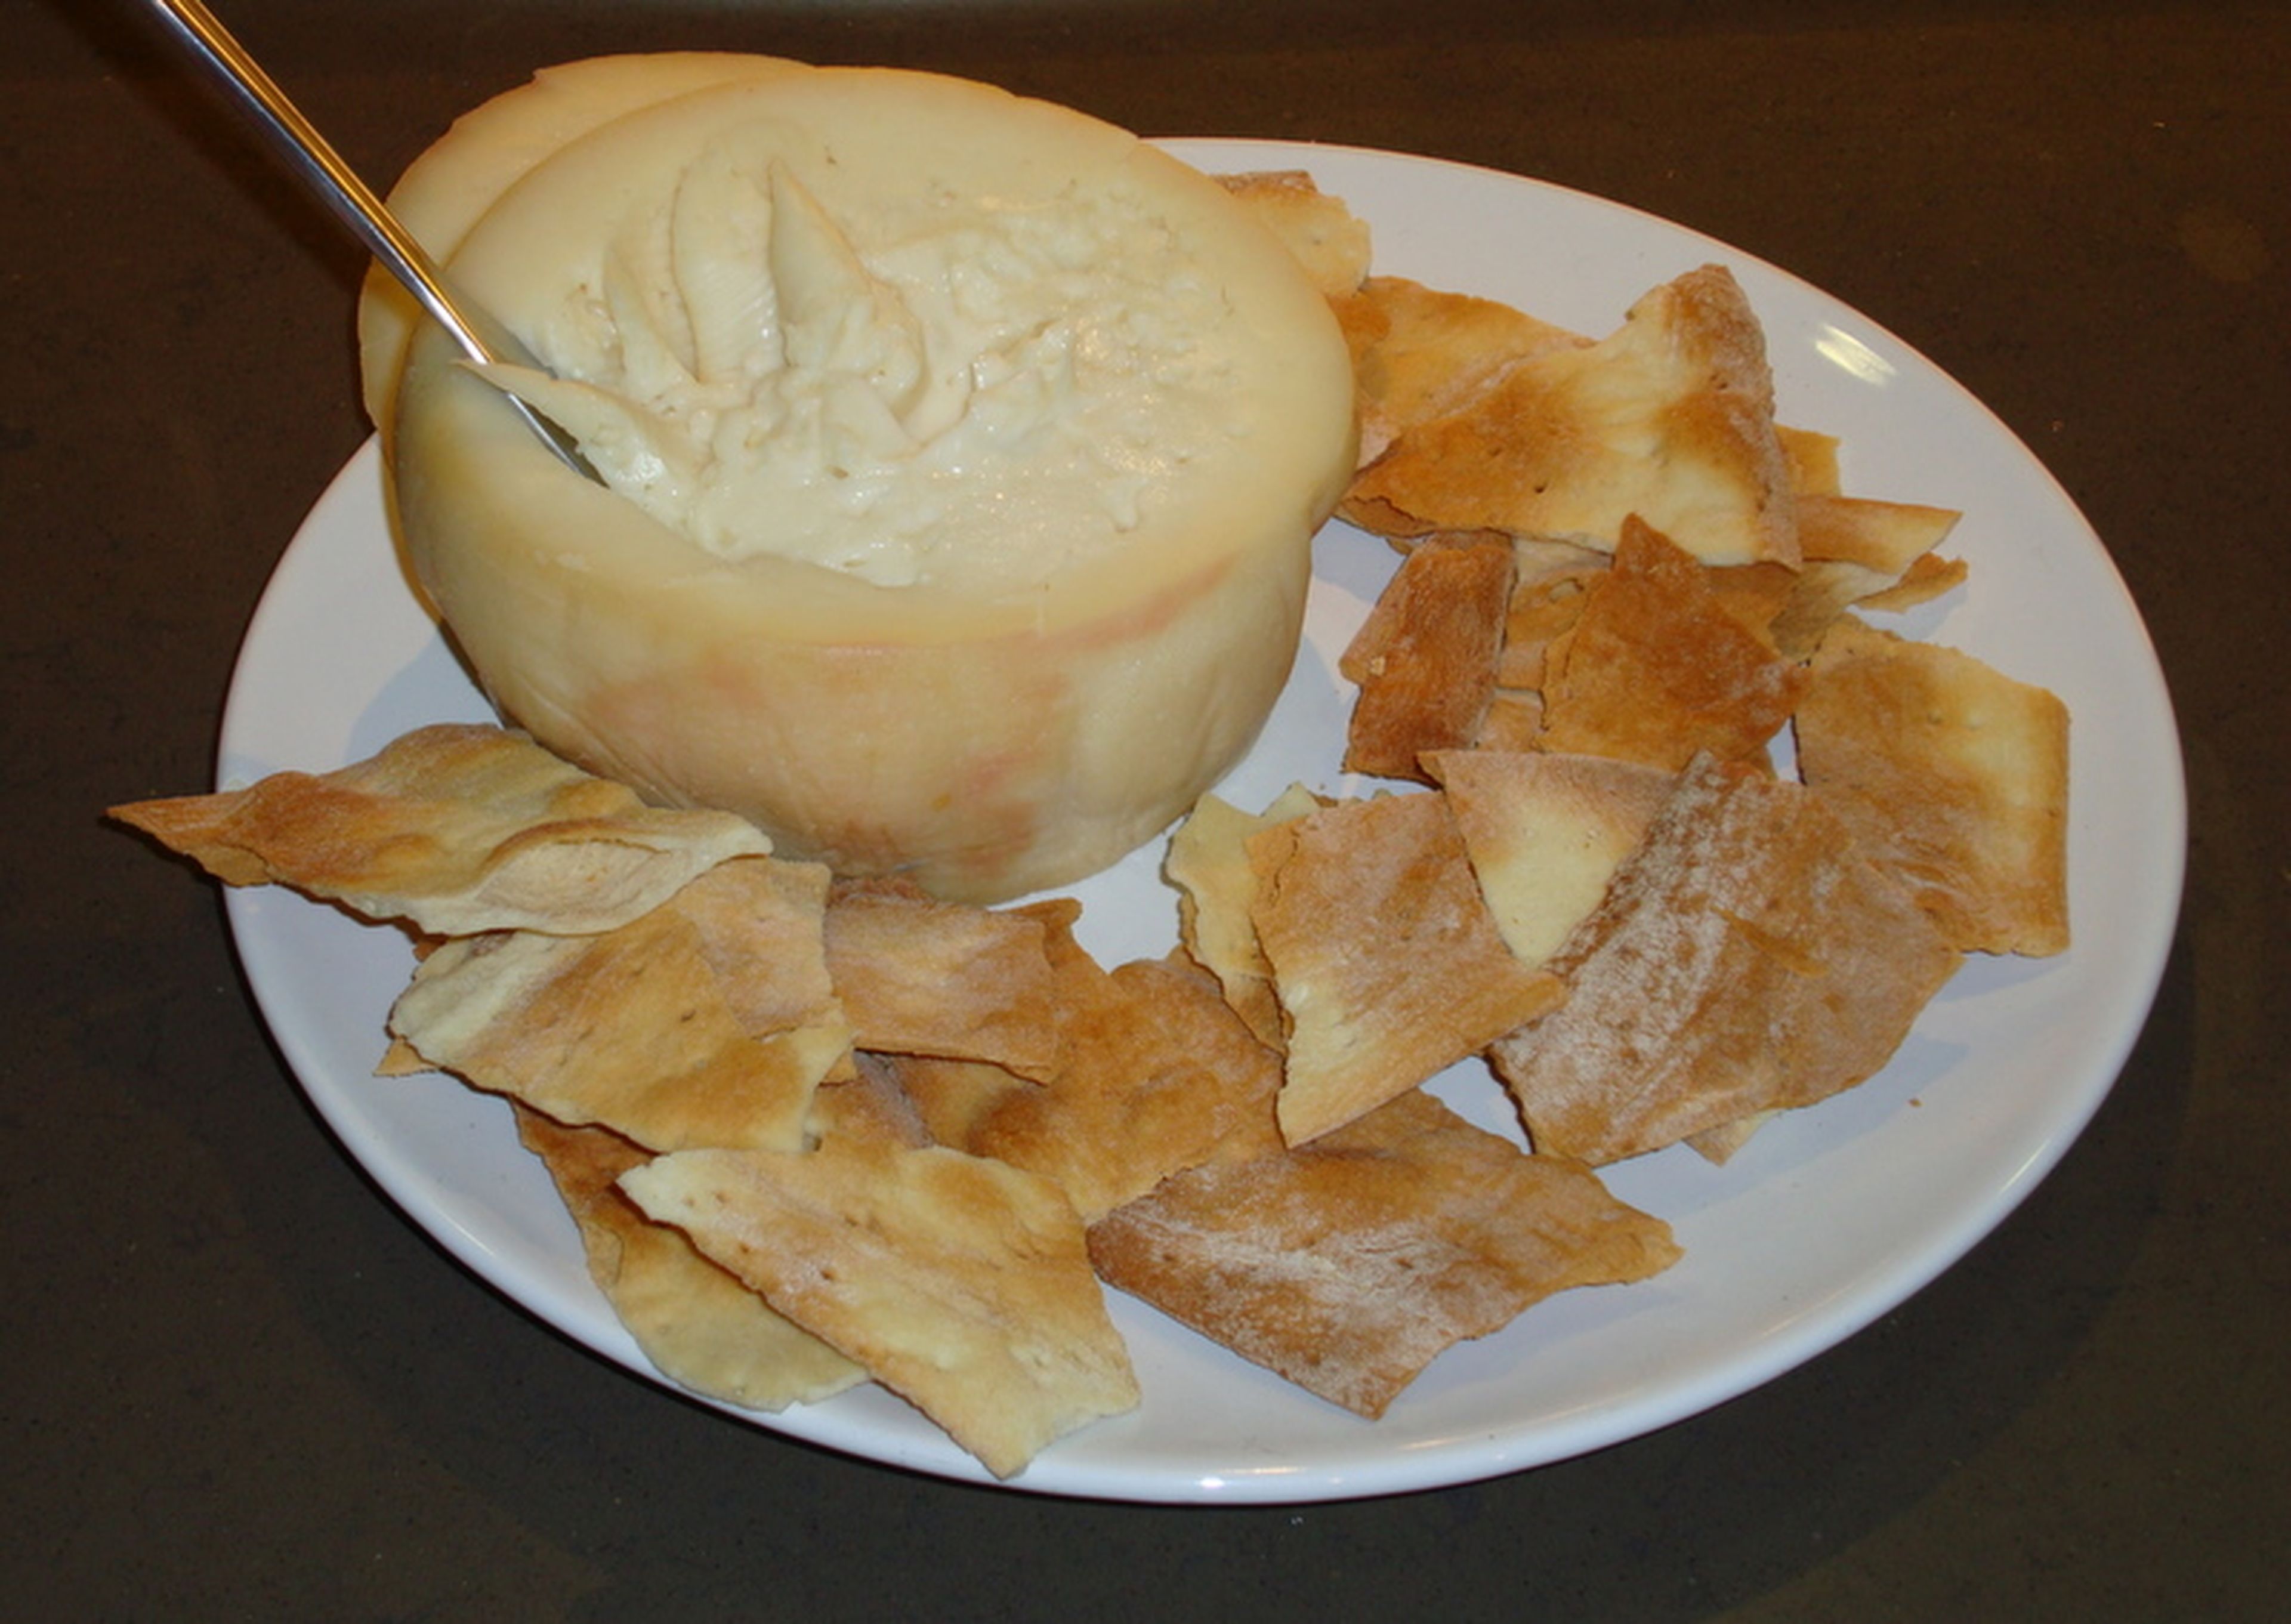 Torta del Casar, queso con Denominación de Origen que se elabora con leche cruda de oveja entrefina al norte de la Sierra de San Pedro en Cáceres.